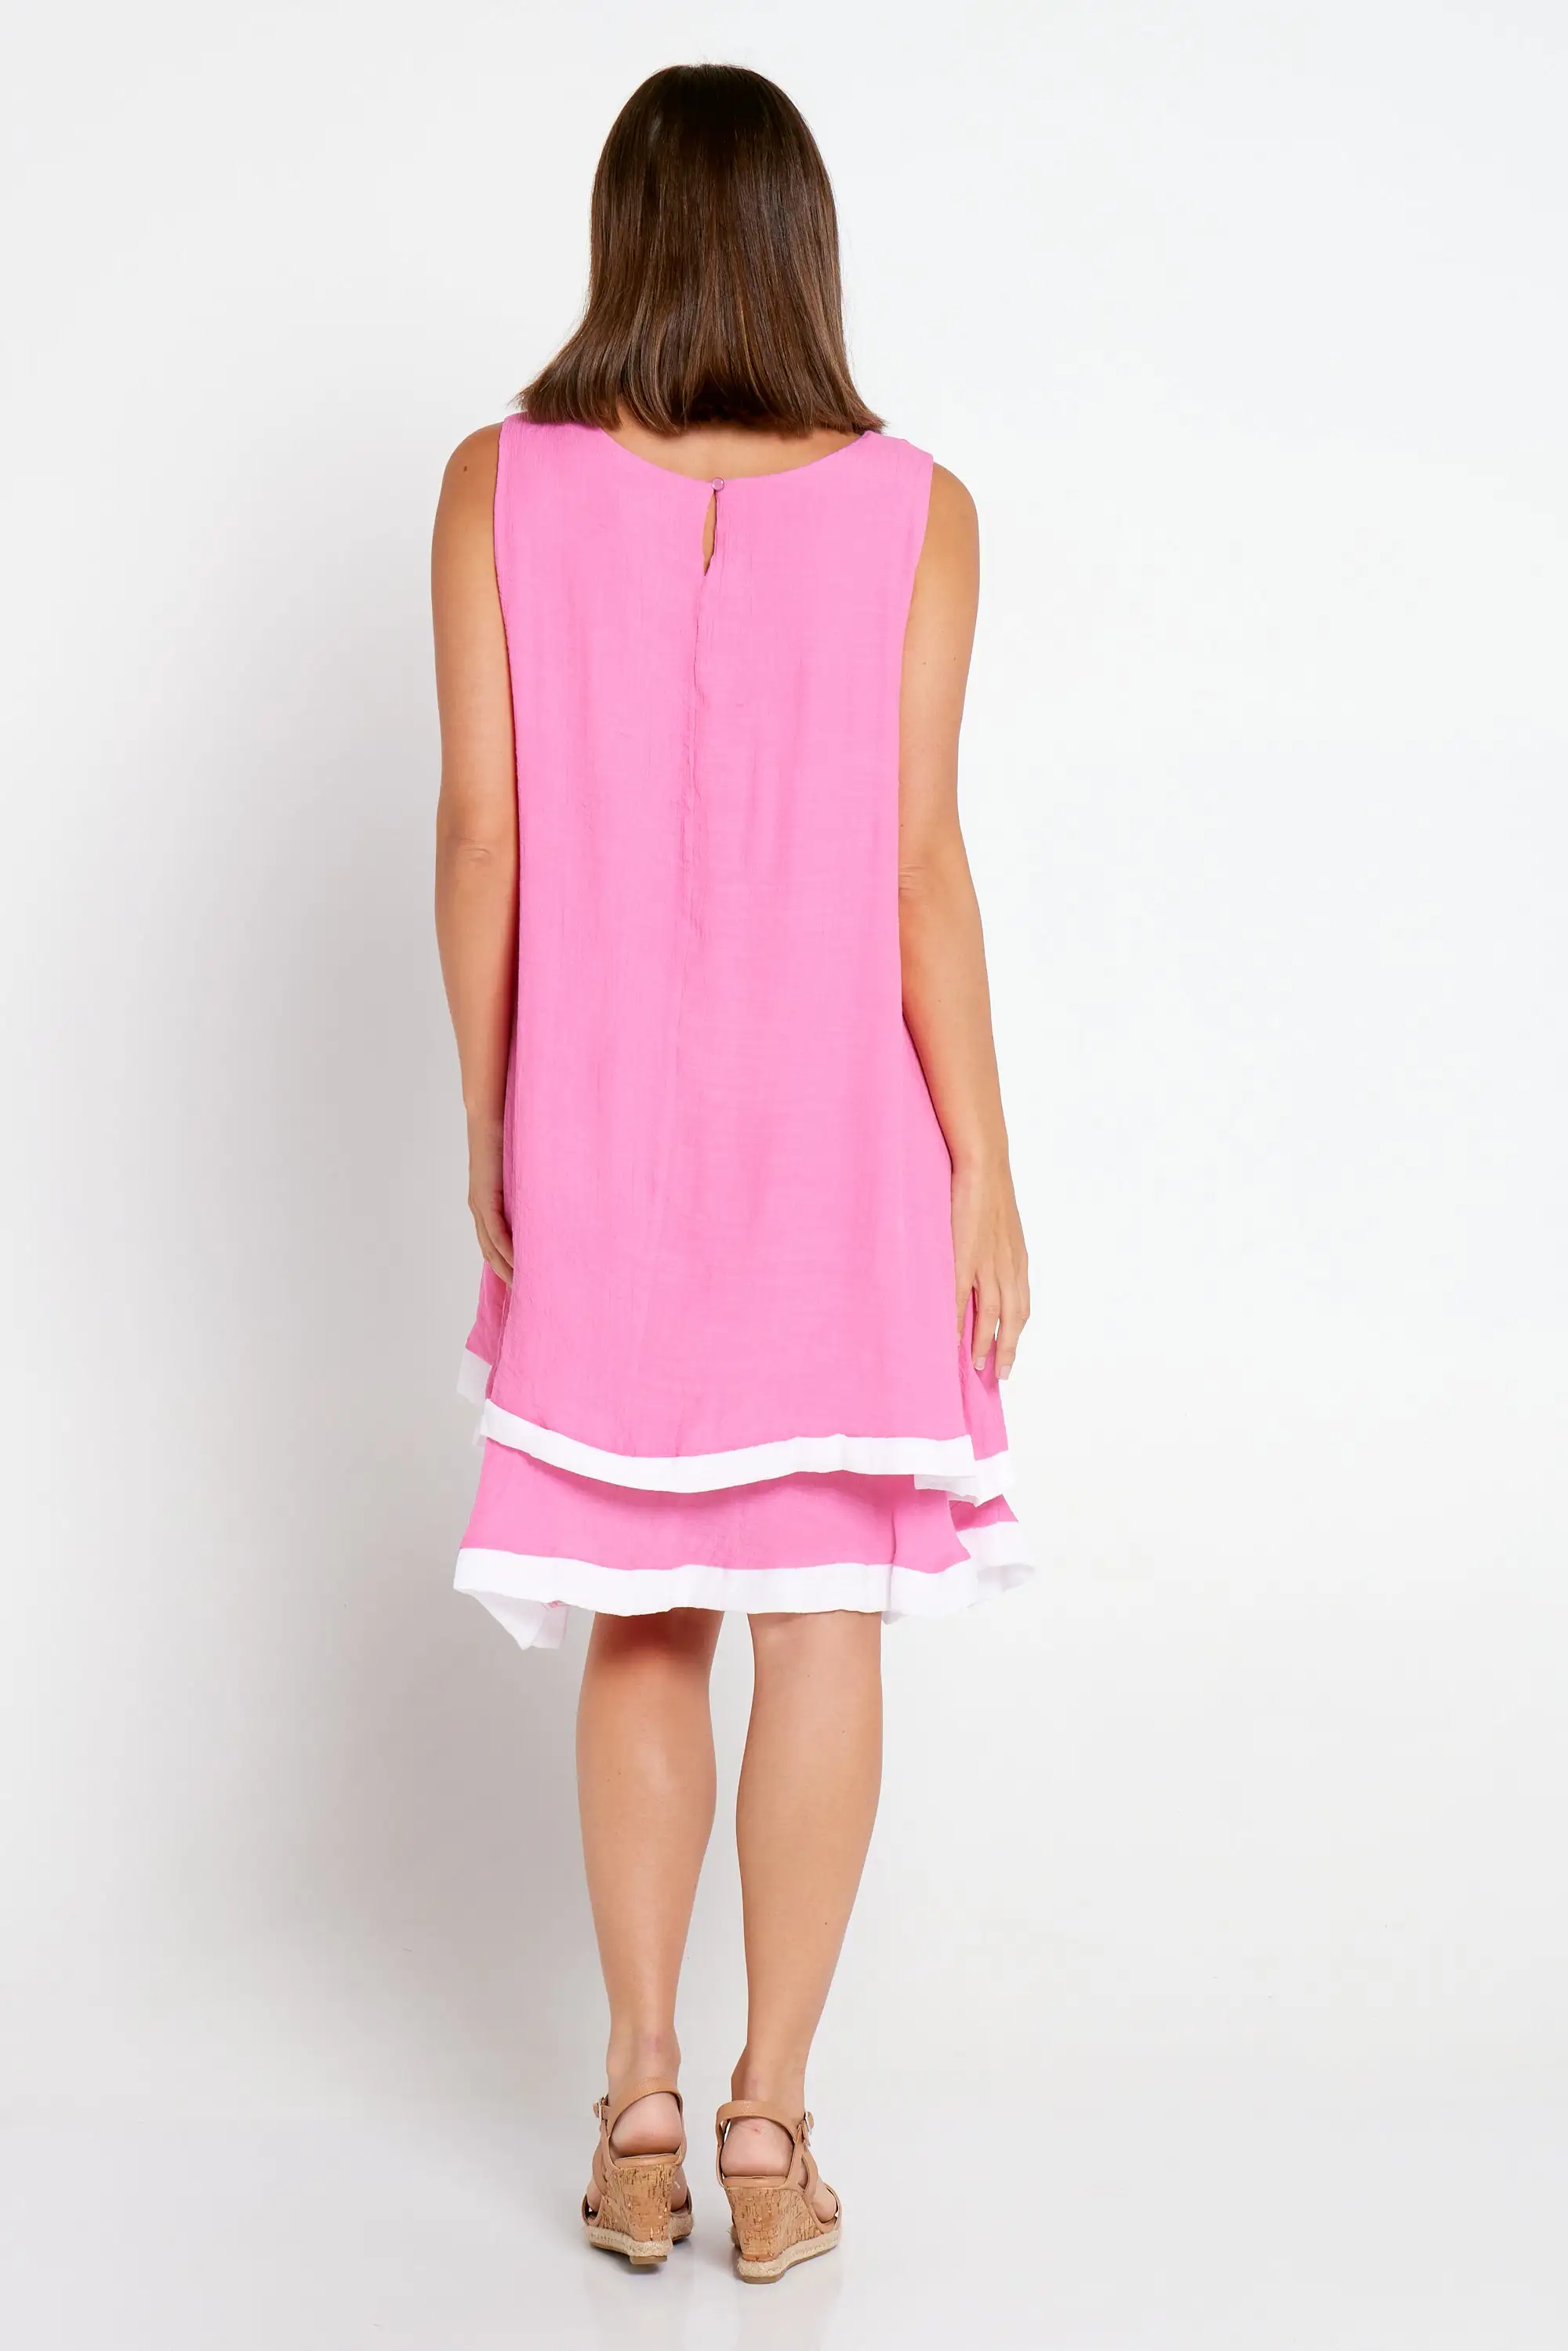 Sadie Dress - Pink